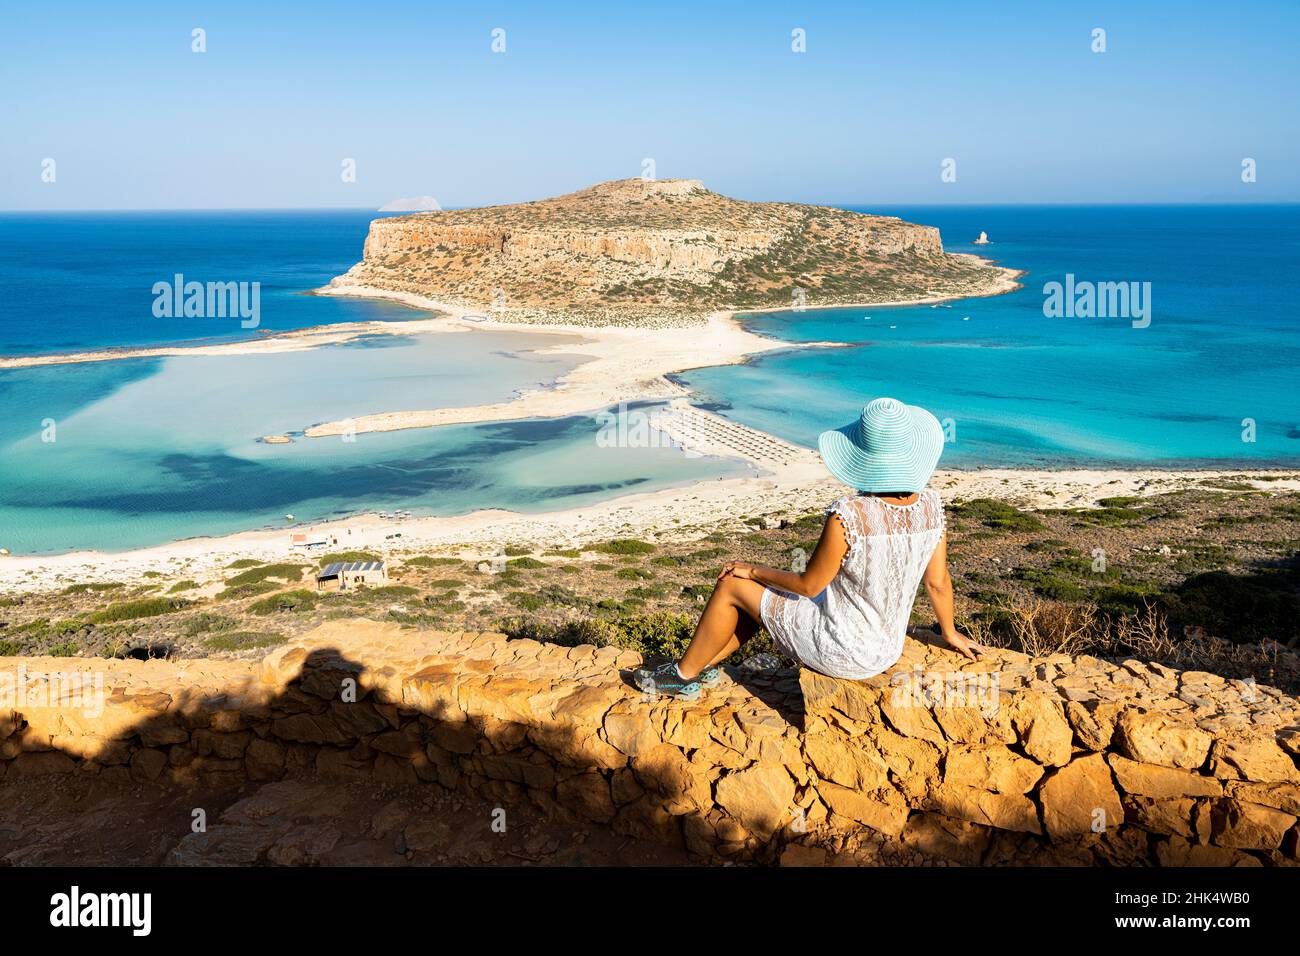 Femme charmante avec sodress et chapeau contemplant la mer turquoise et le lagon, Balos, Crète, Iles grecques, Grèce,Europe Banque D'Images